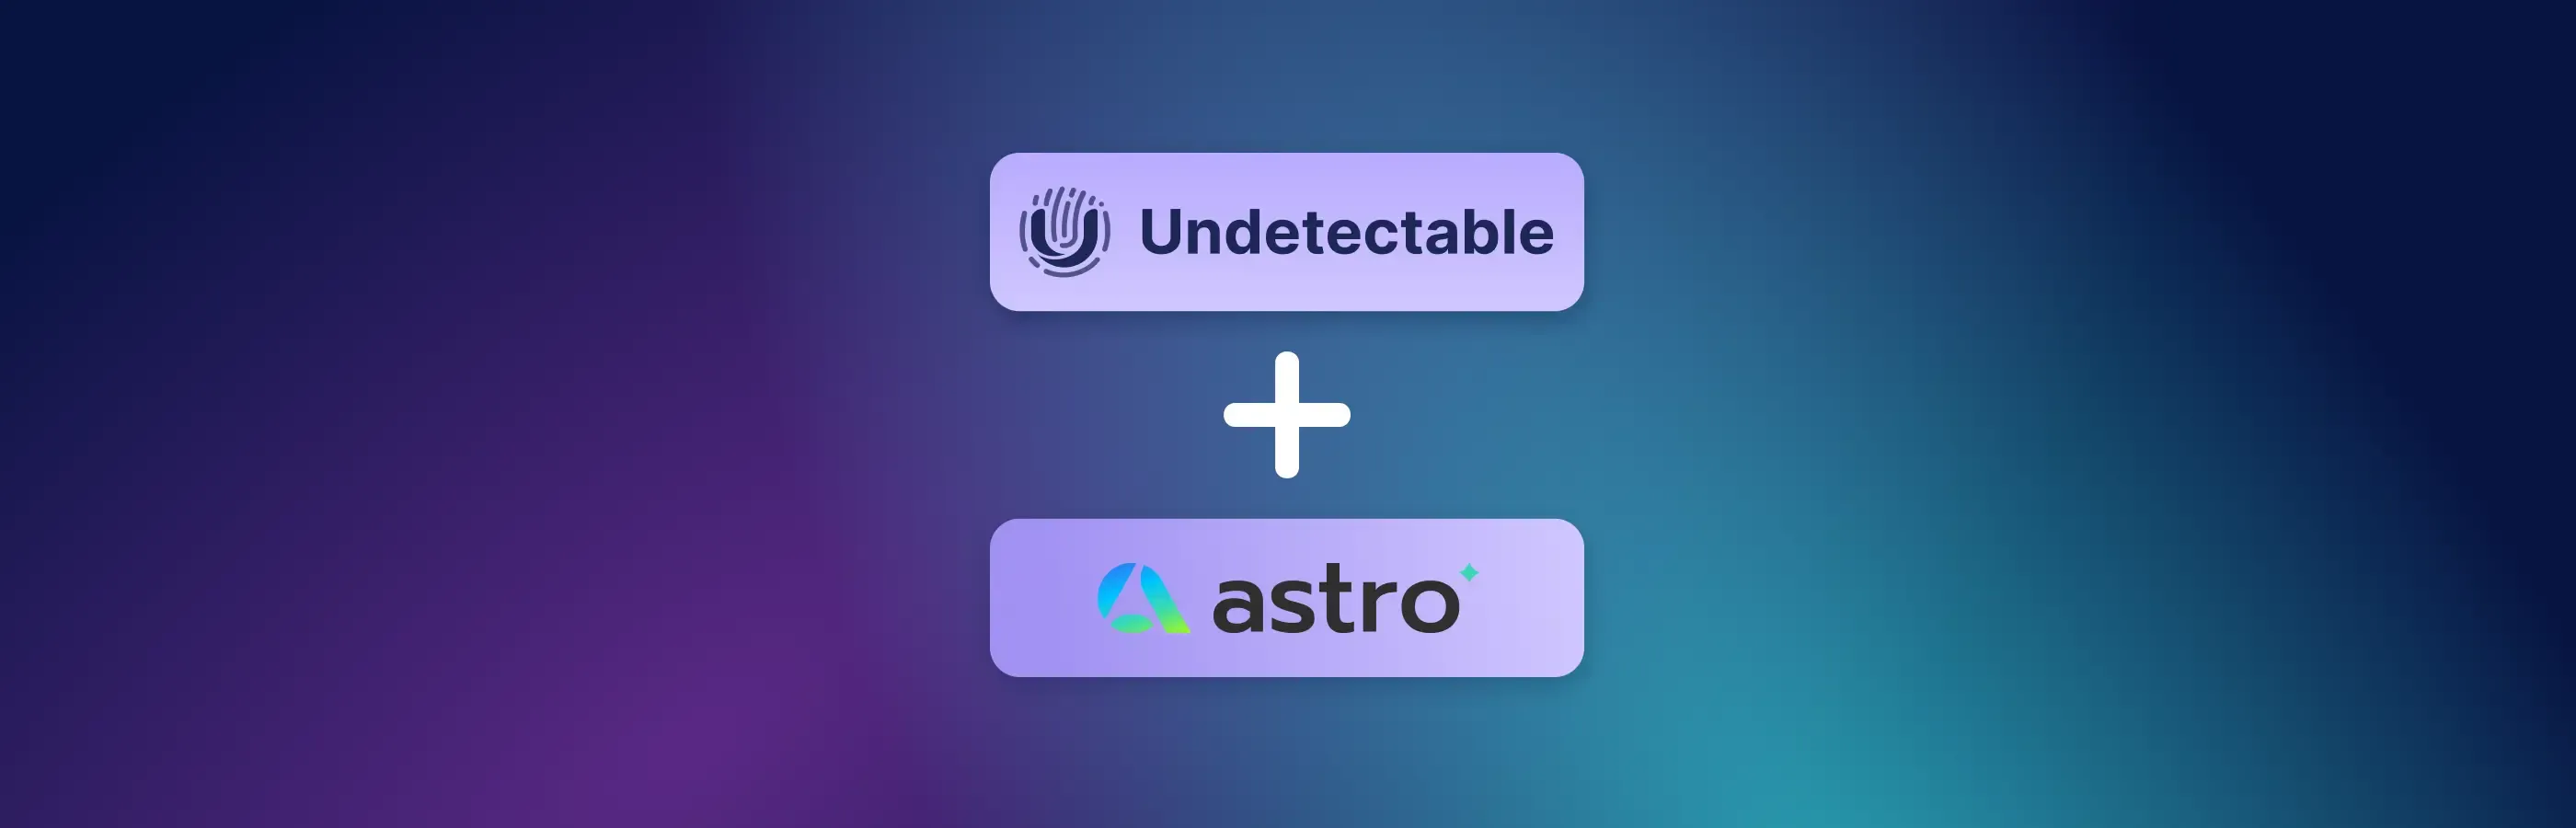 Comment utiliser Astro avec Undetectable